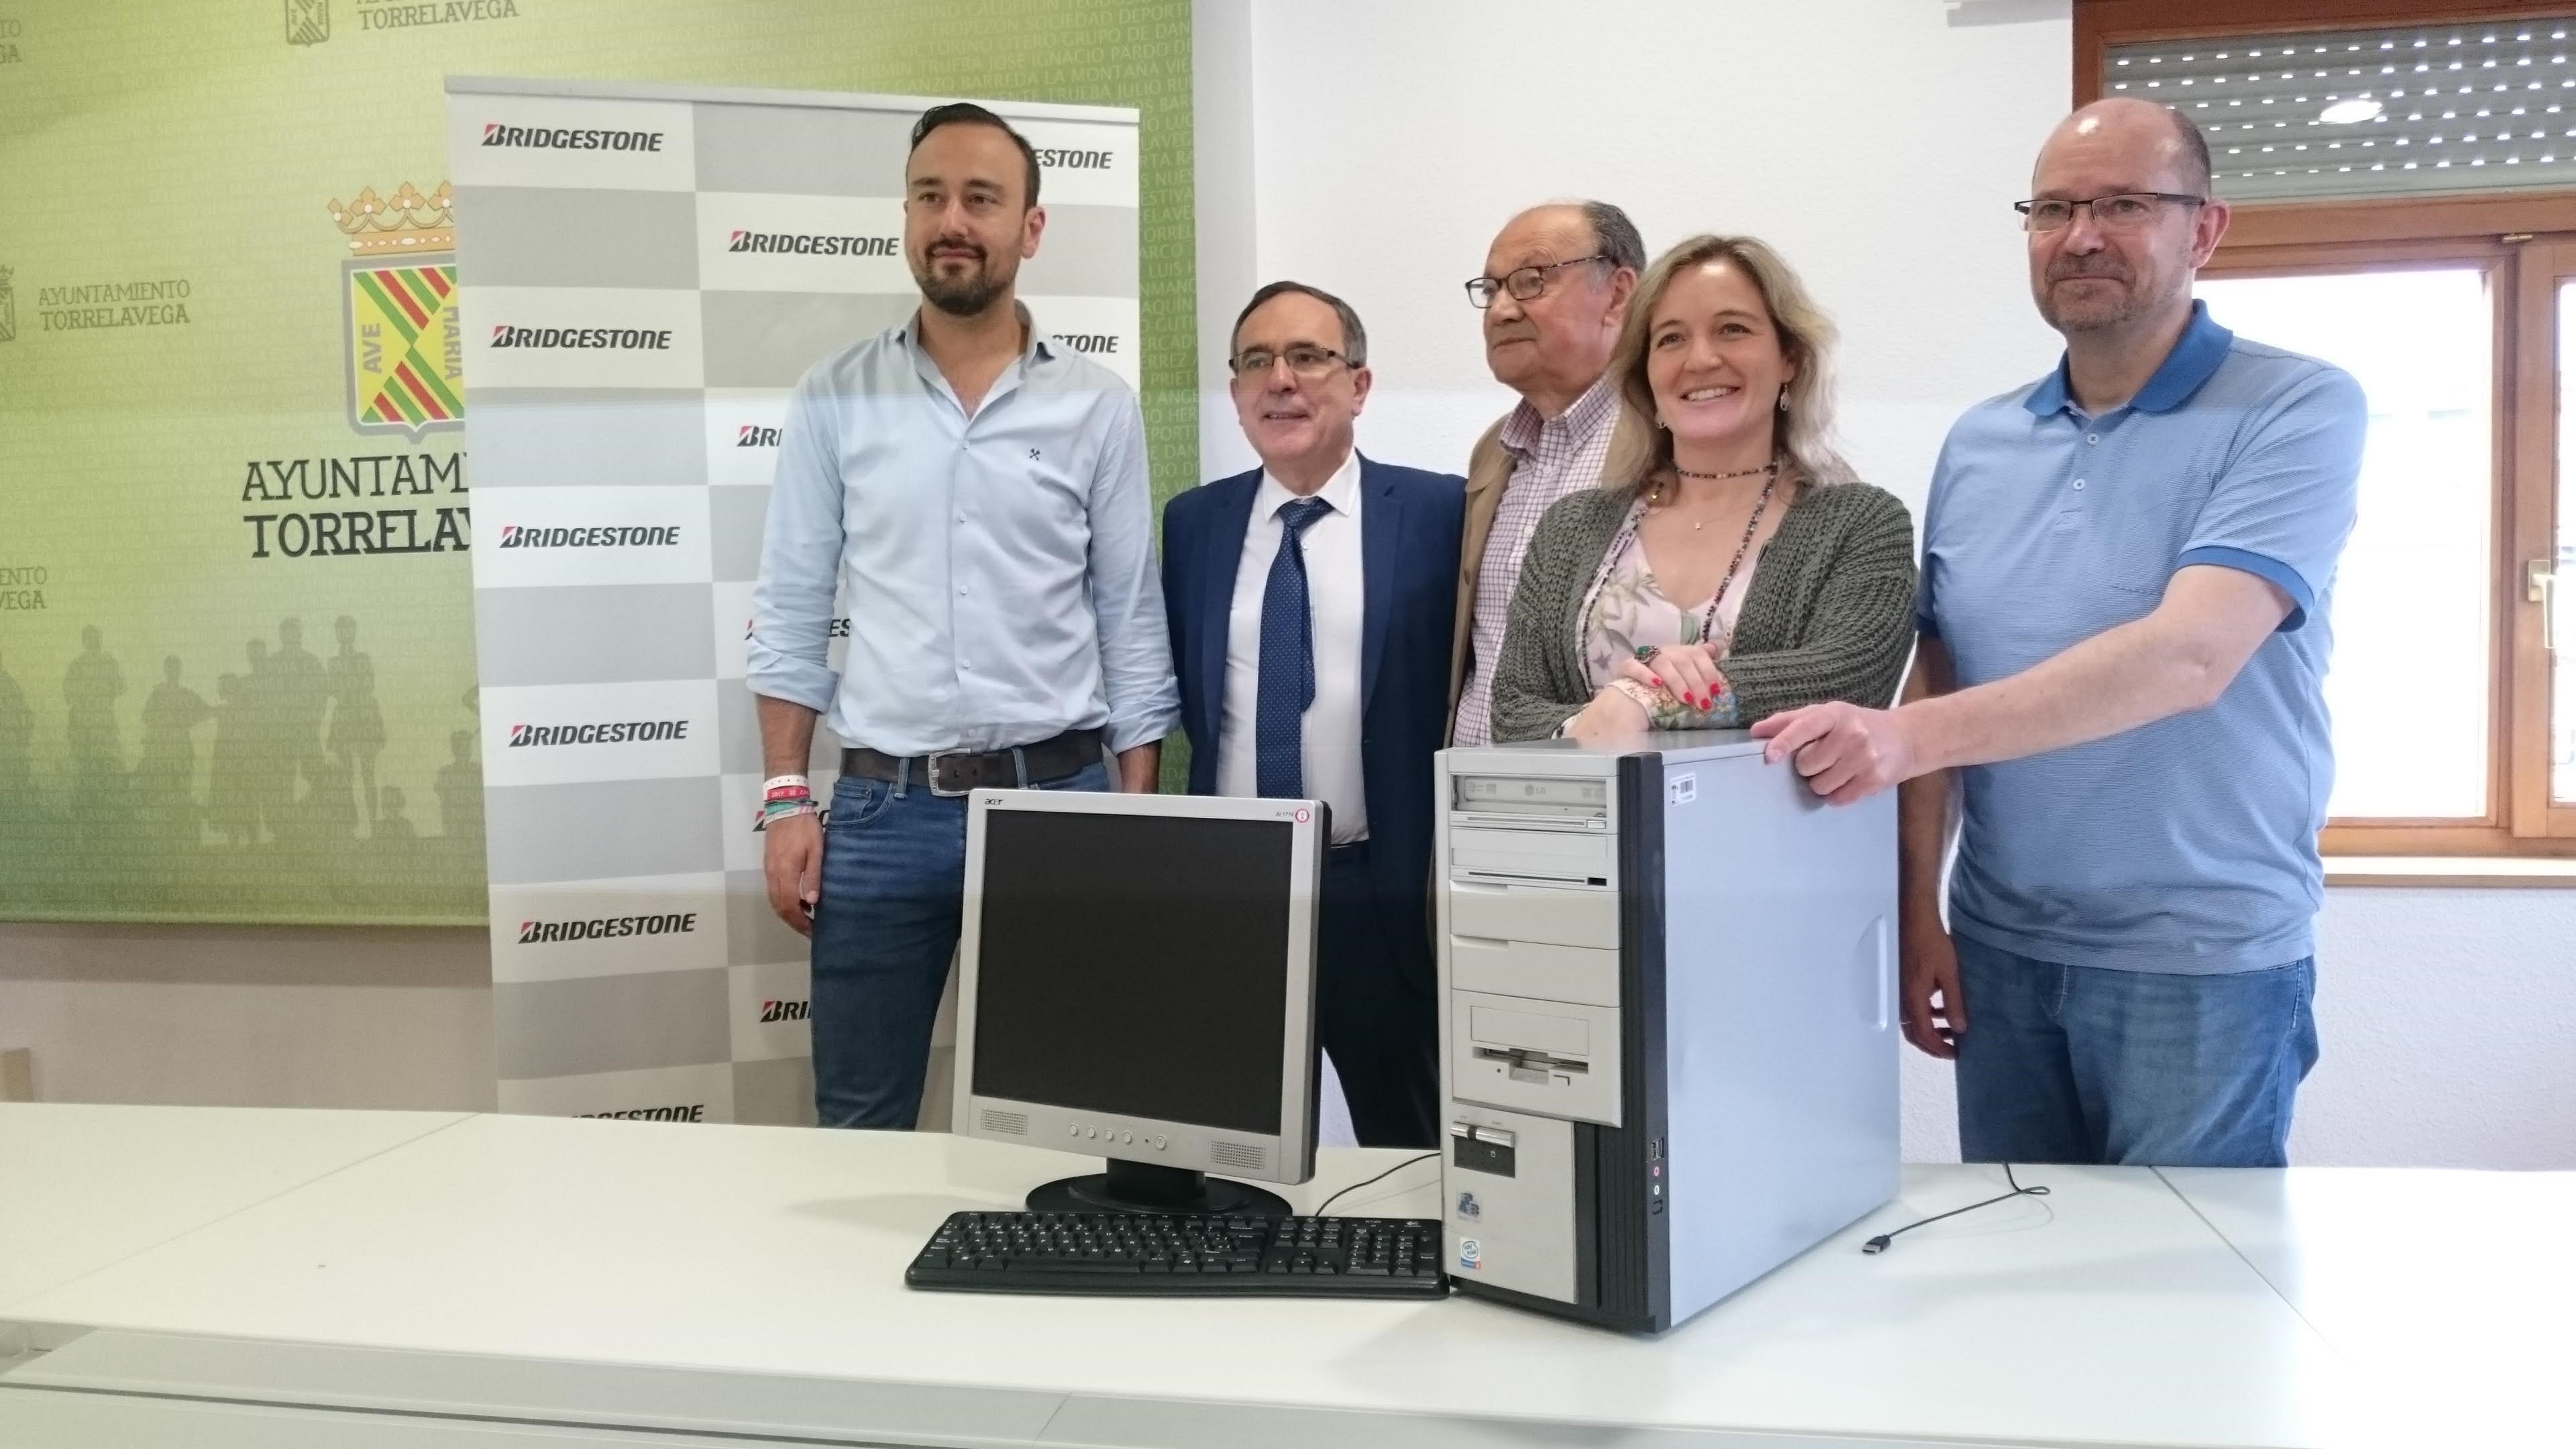 Bridgestone dona equipos informáticos a proyectos sociales de Torrelavega